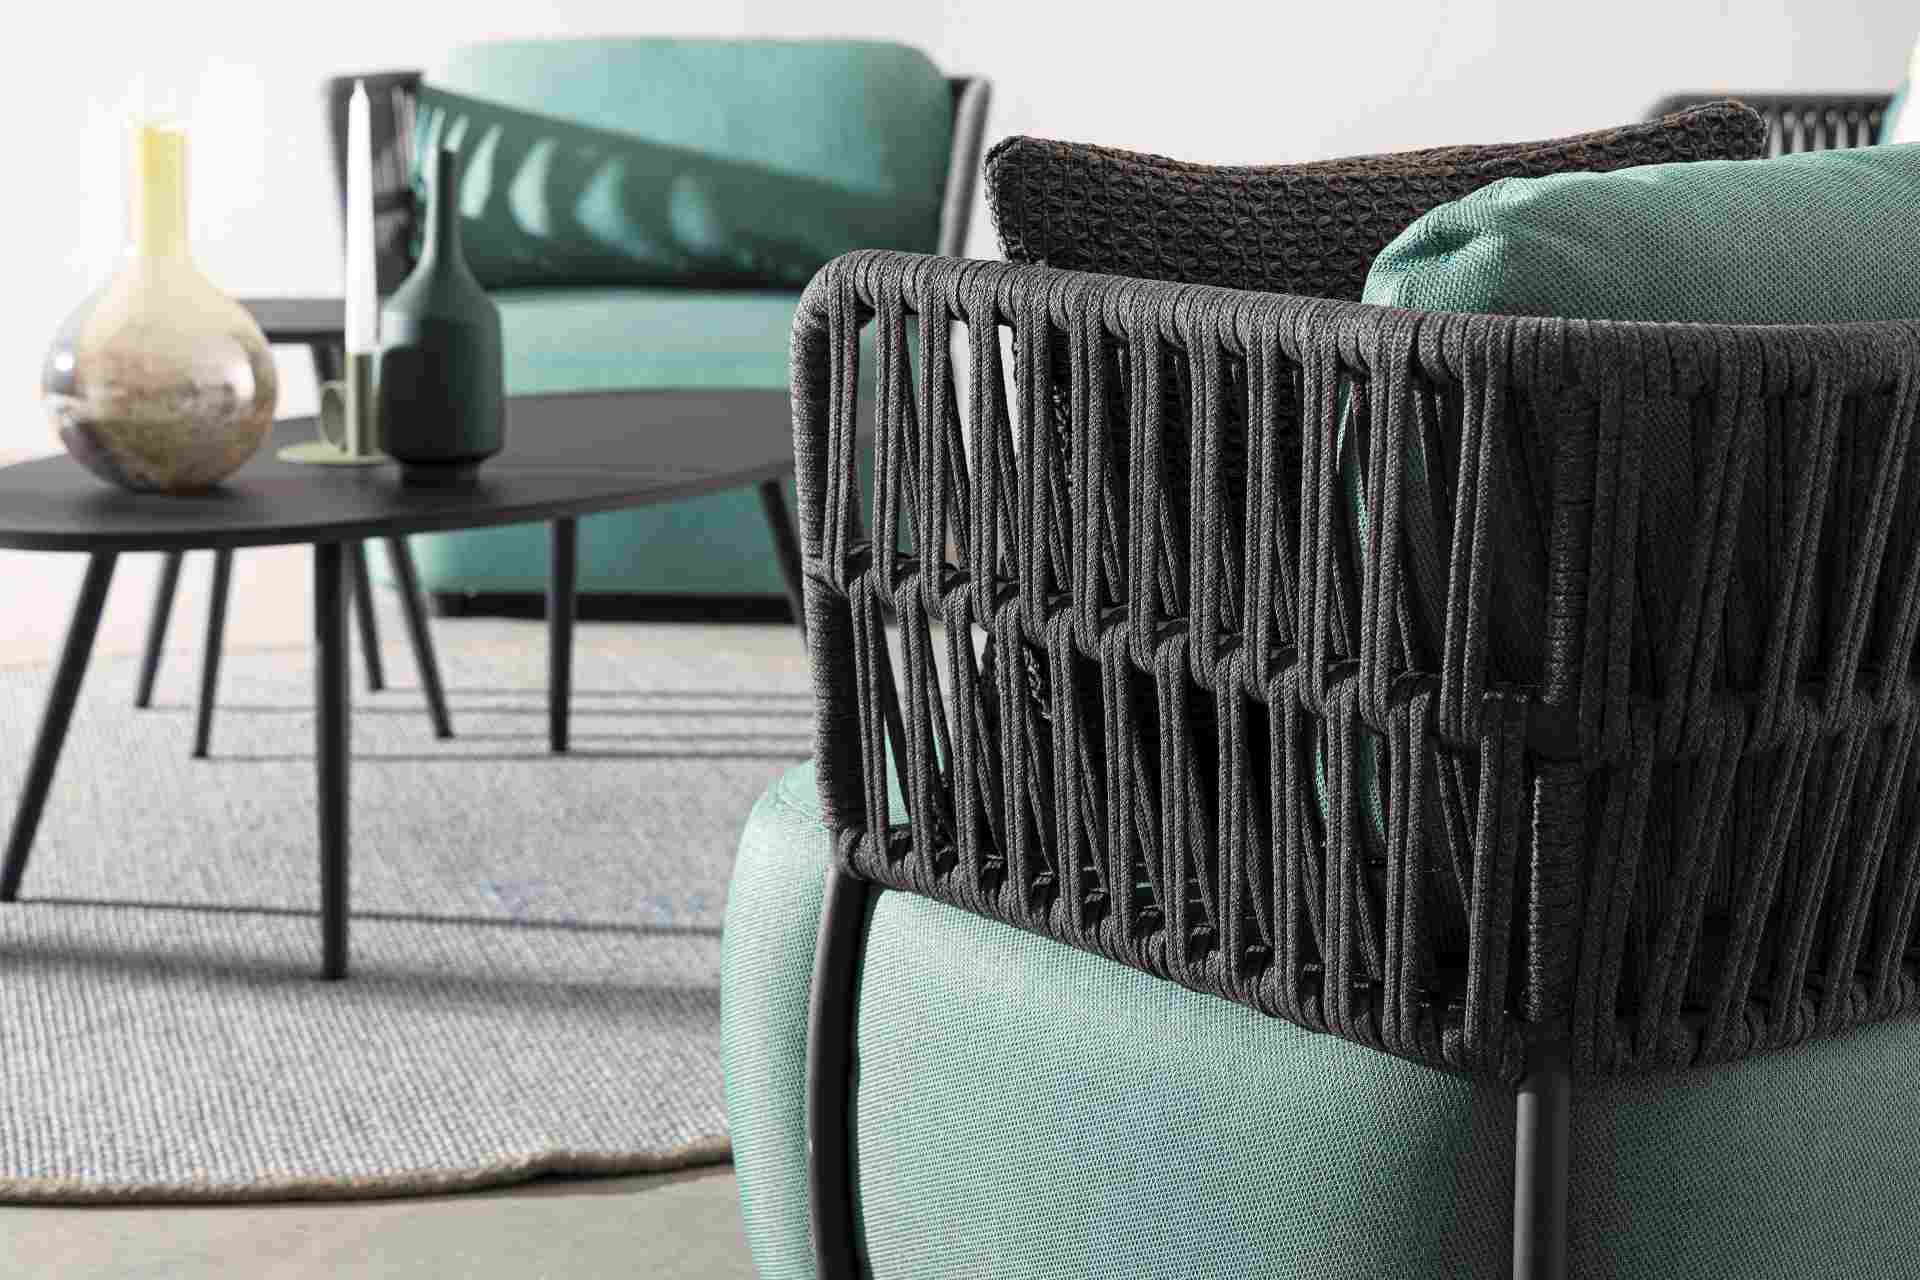 Das Gartensofa Palmer überzeugt mit seinem modernen Design. Gefertigt wurde es aus Olefin-Stoff, welcher einen grünen Farbton besitzt. Das Gestell ist aus Aluminium und hat eine Anthrazit Farbe. Das Sofa verfügt über eine Sitzhöhe von 40 cm und ist für de